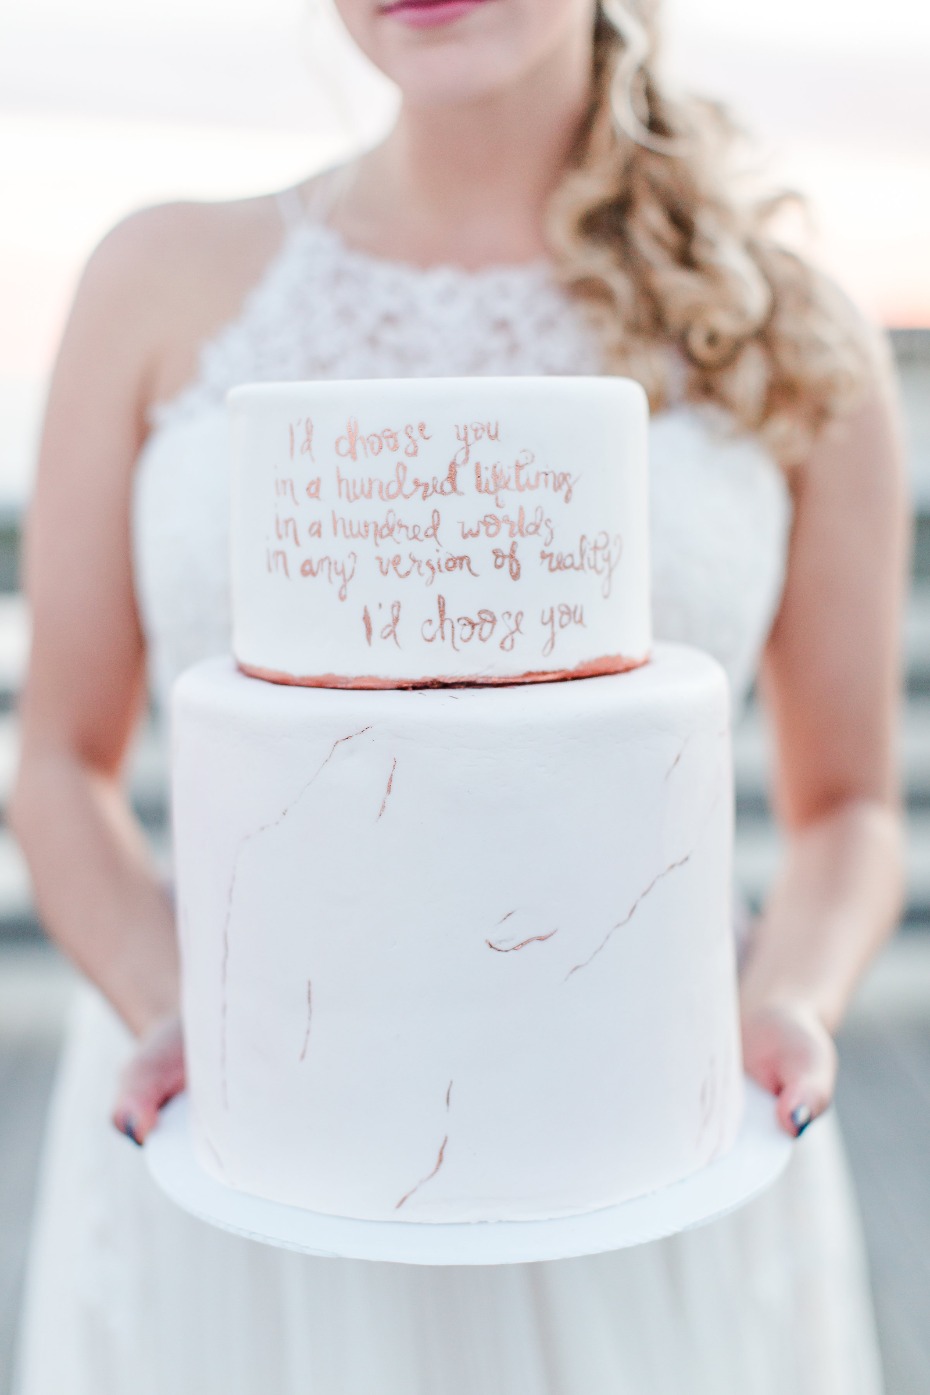 Wedding vows cake idea